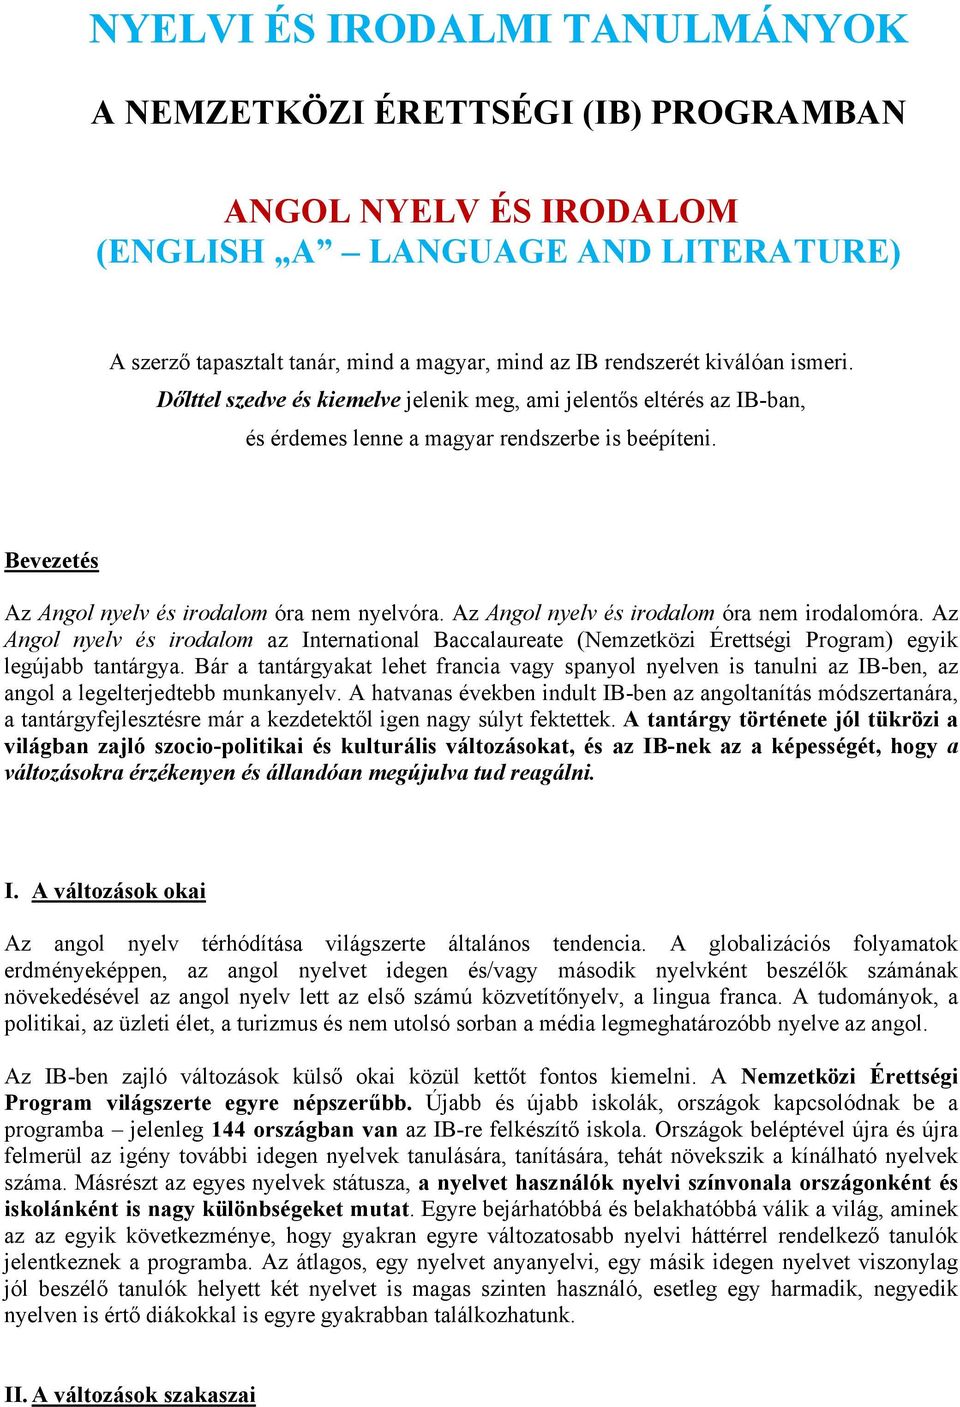 Az Angol nyelv és irodalom óra nem irodalomóra. Az Angol nyelv és irodalom az International Baccalaureate (Nemzetközi Érettségi Program) egyik legújabb tantárgya.